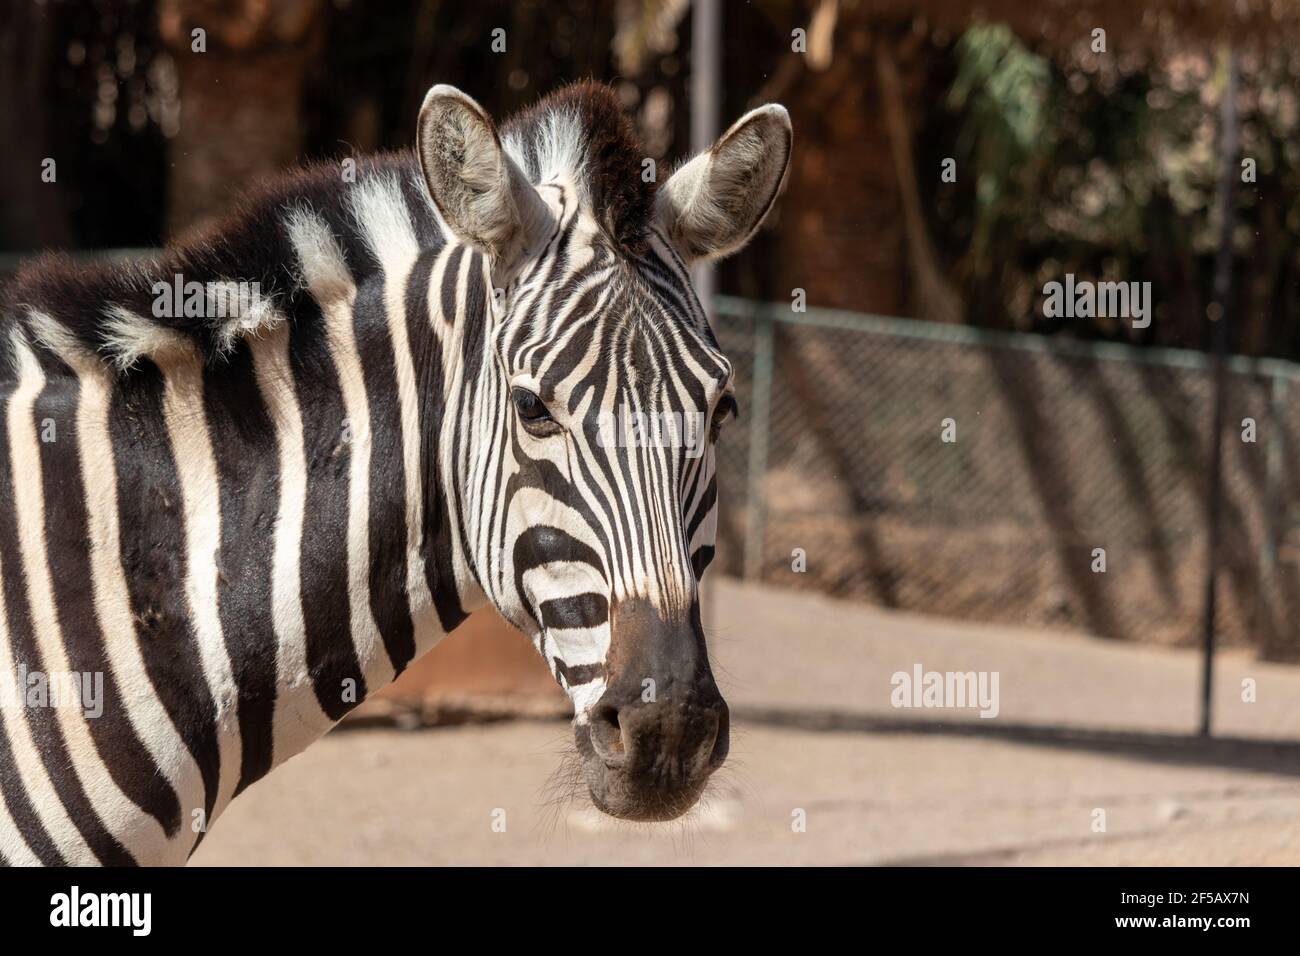 Portait di zebra. Zebra nello zoo. Animale con strisce bianche e nere. Foto della testa di zebra. Foto Stock